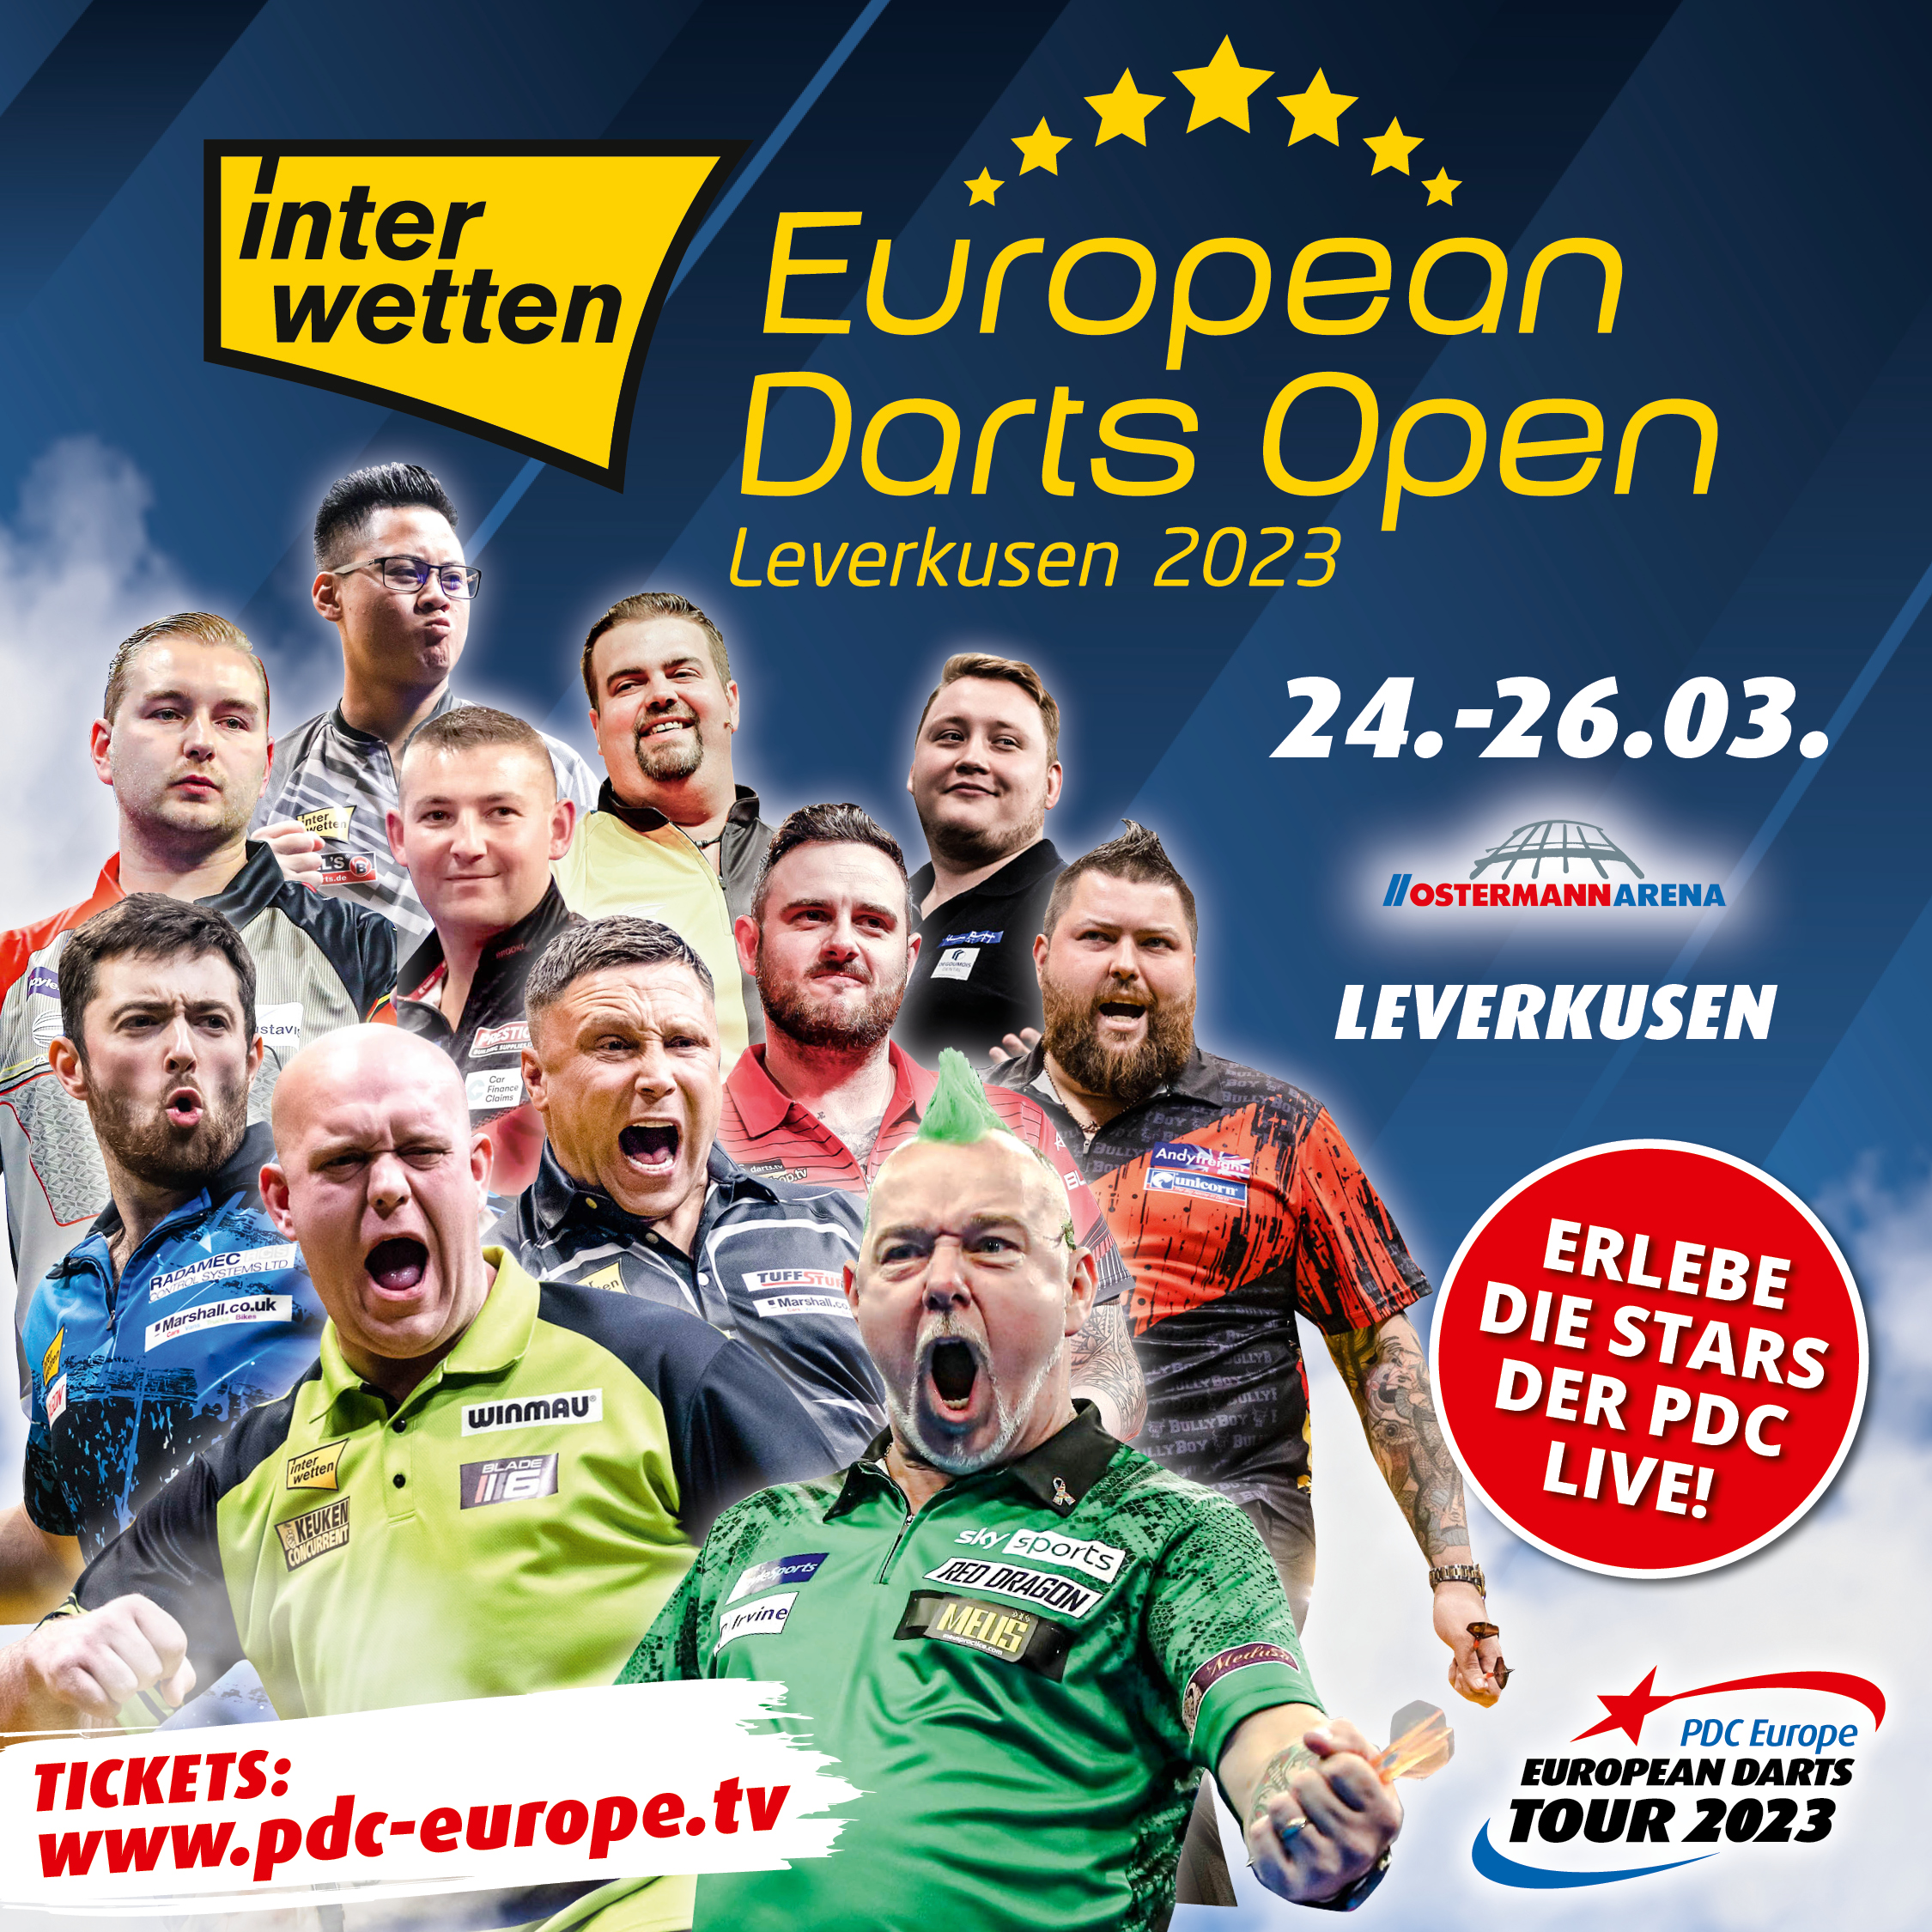 European Darts Open 